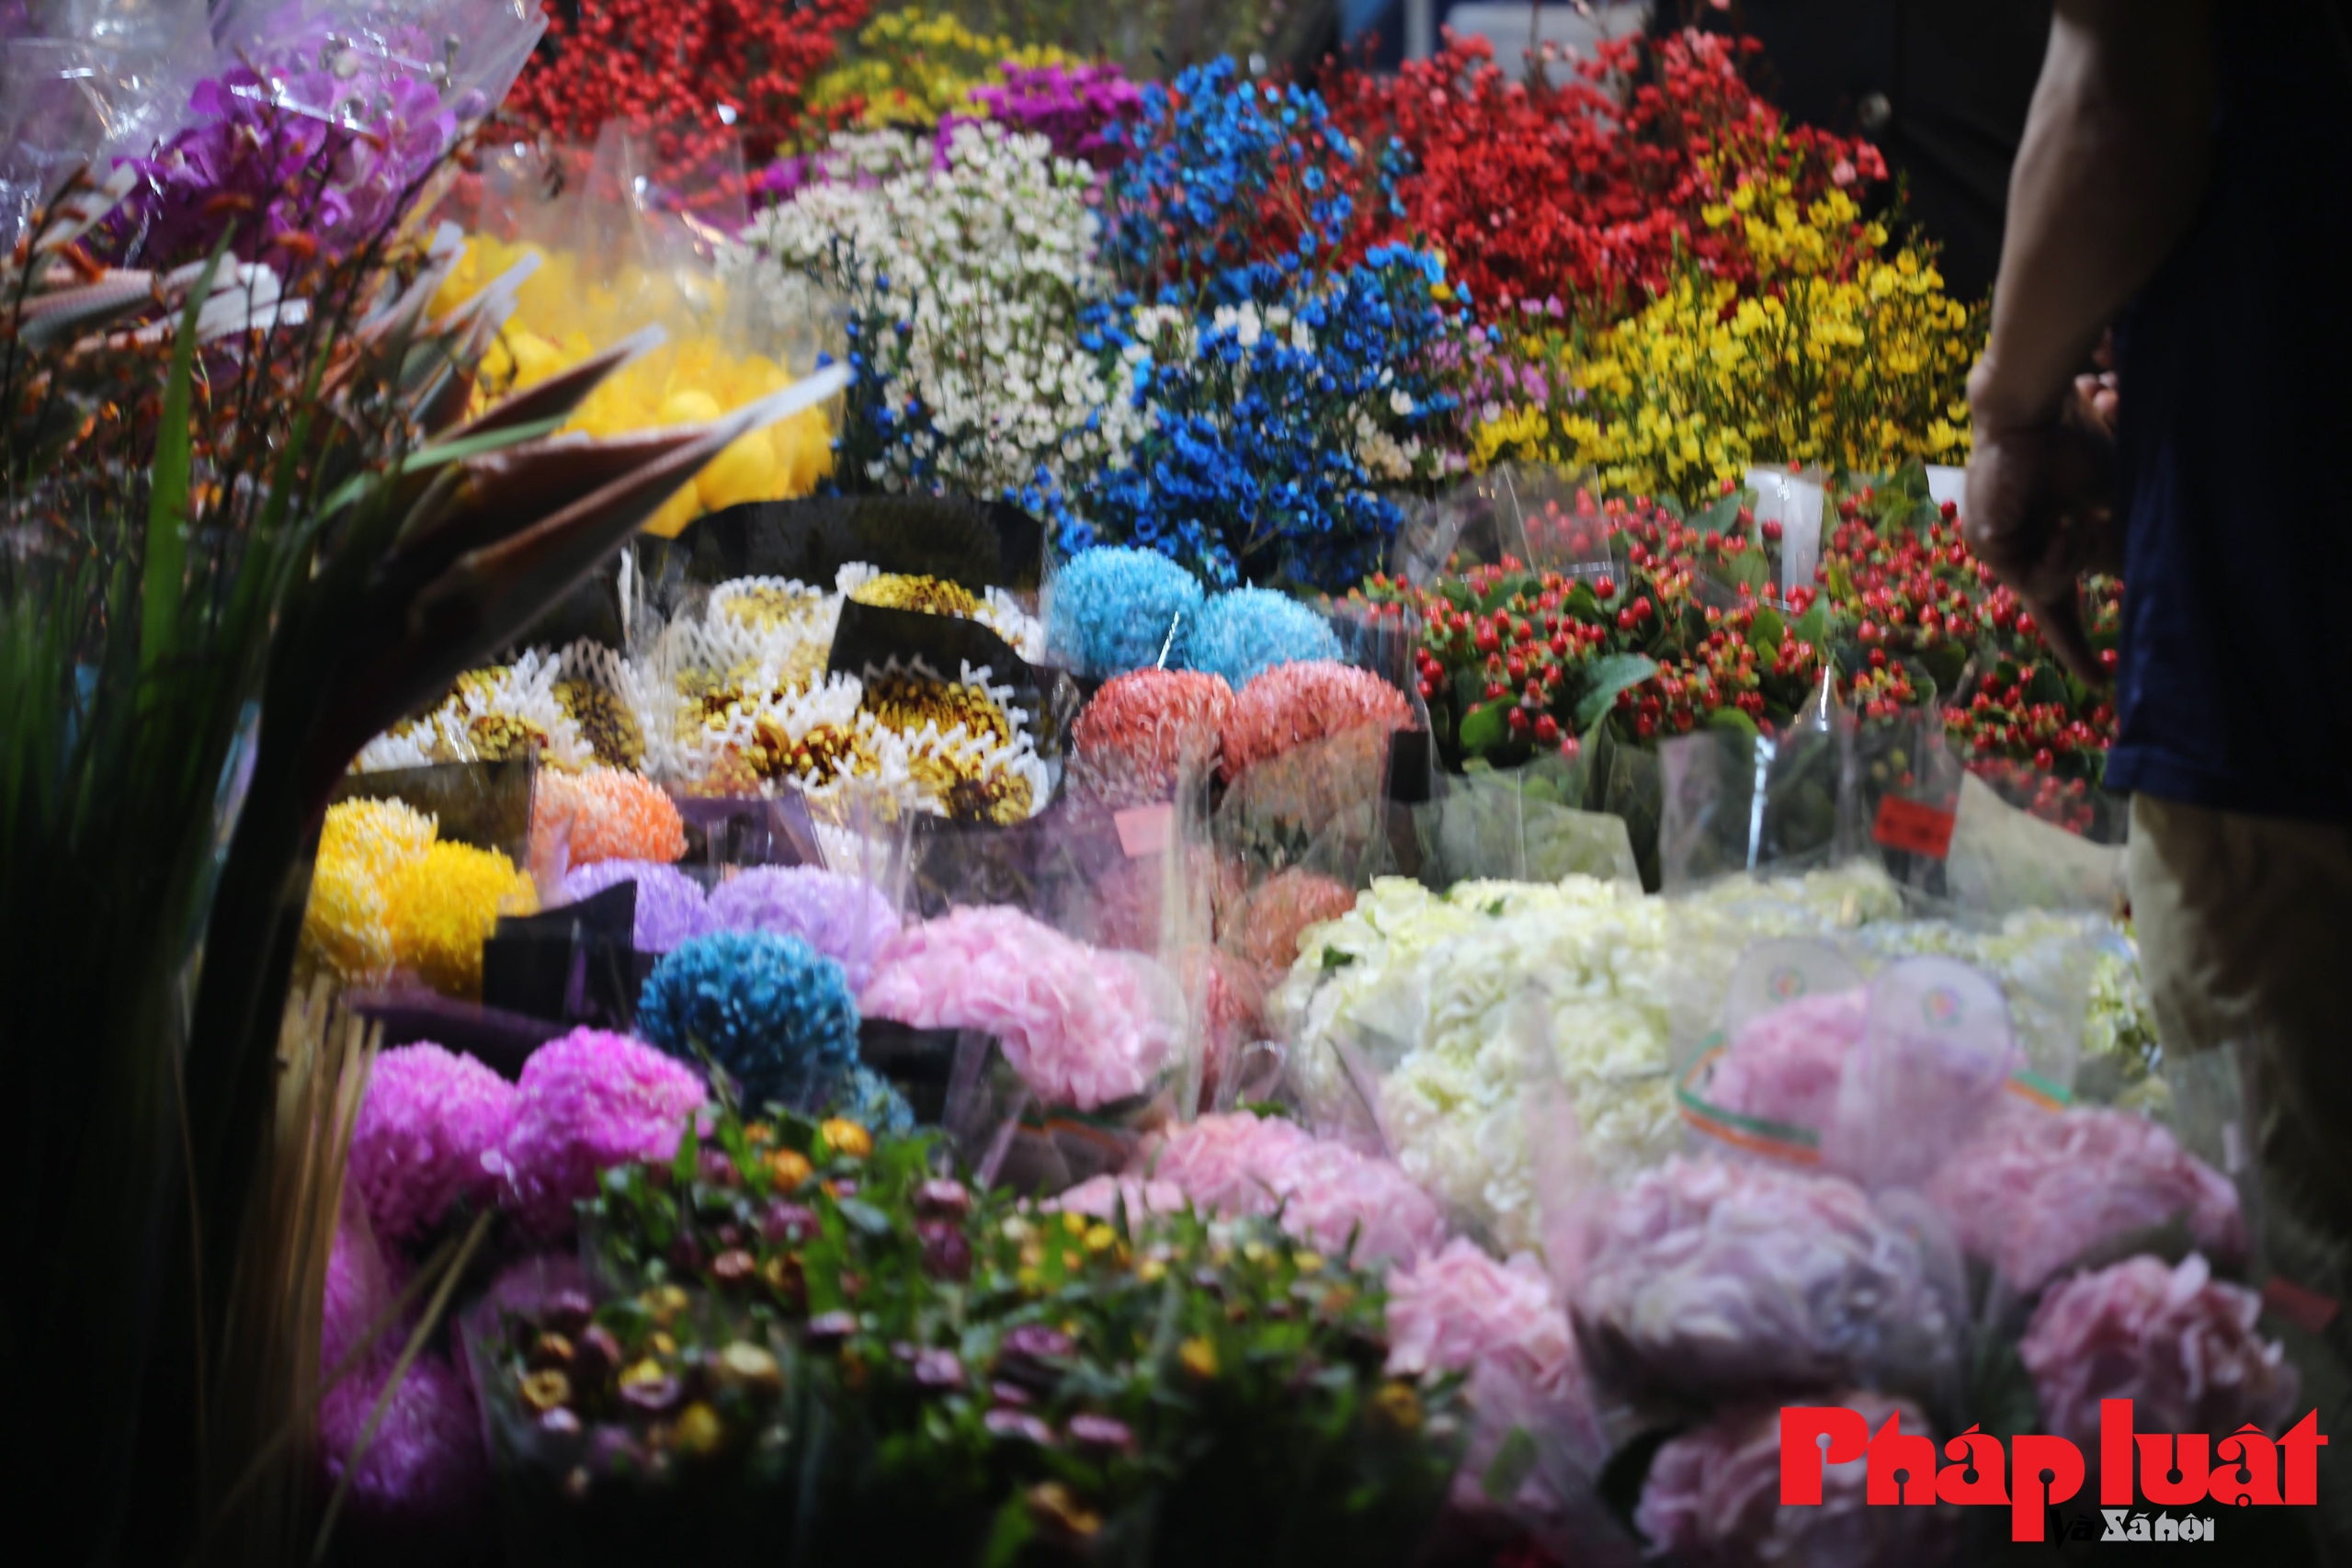 Chợ hoa Quảng An rộn ràng trong đêm trước ngày Valentine